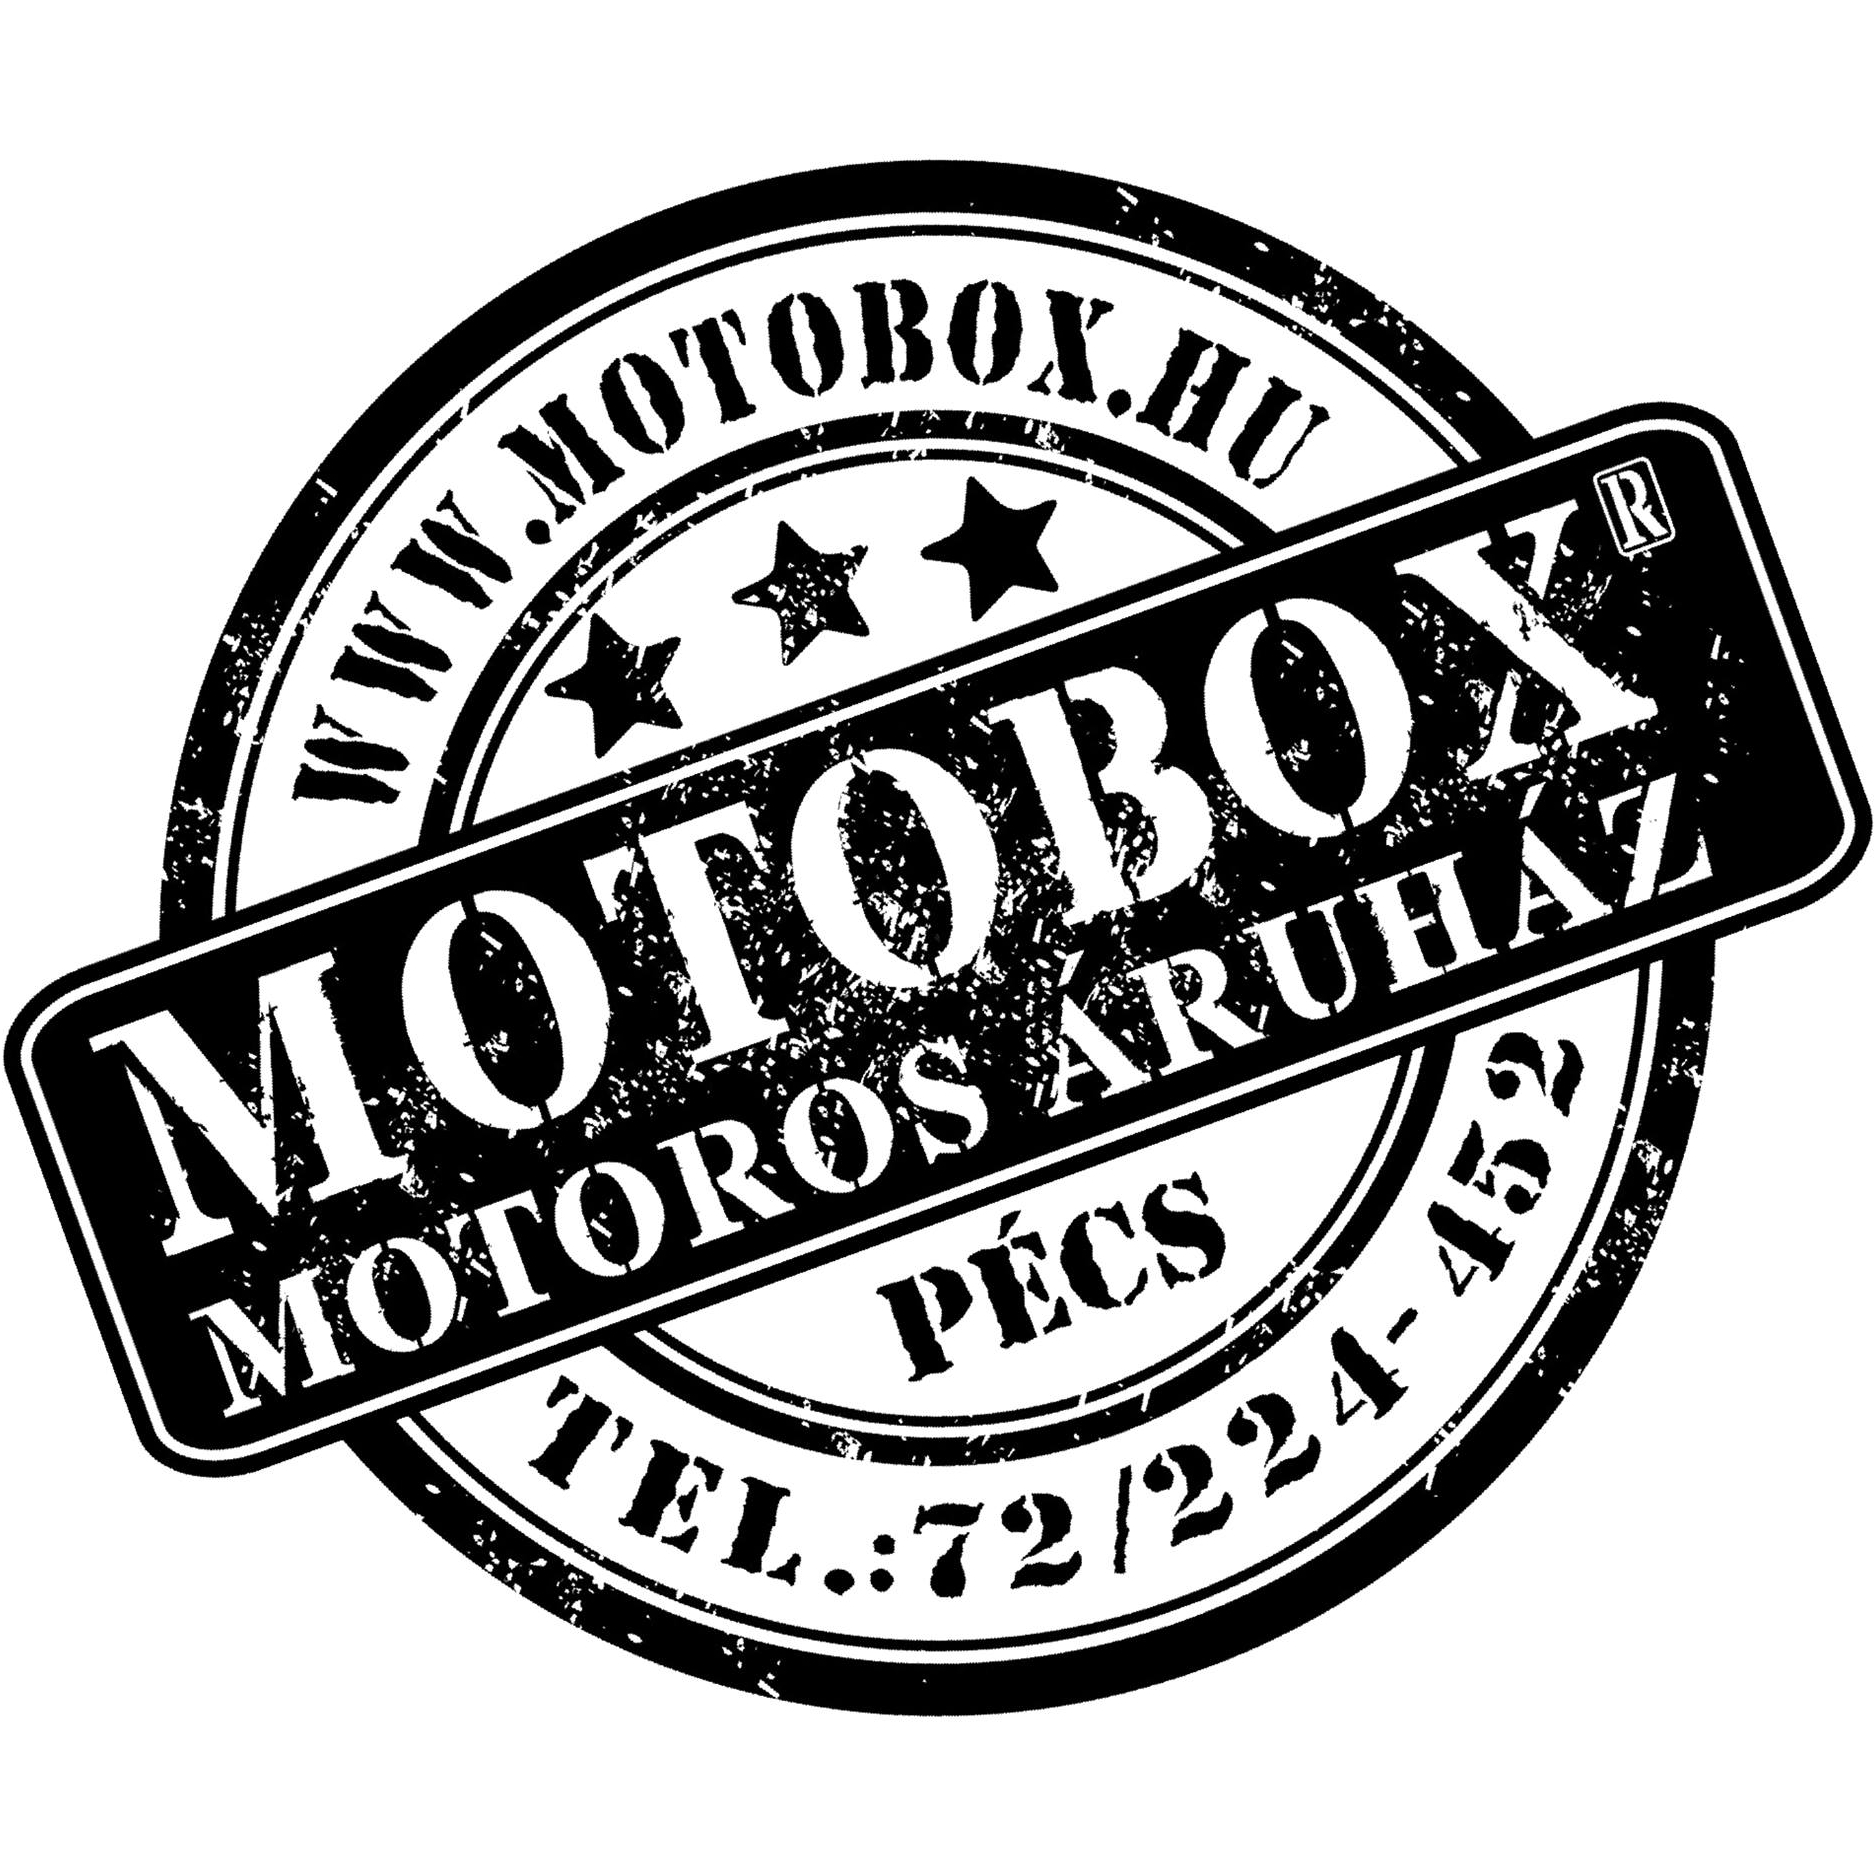 MOTOBOX Motoros Áruház - motorosbolt